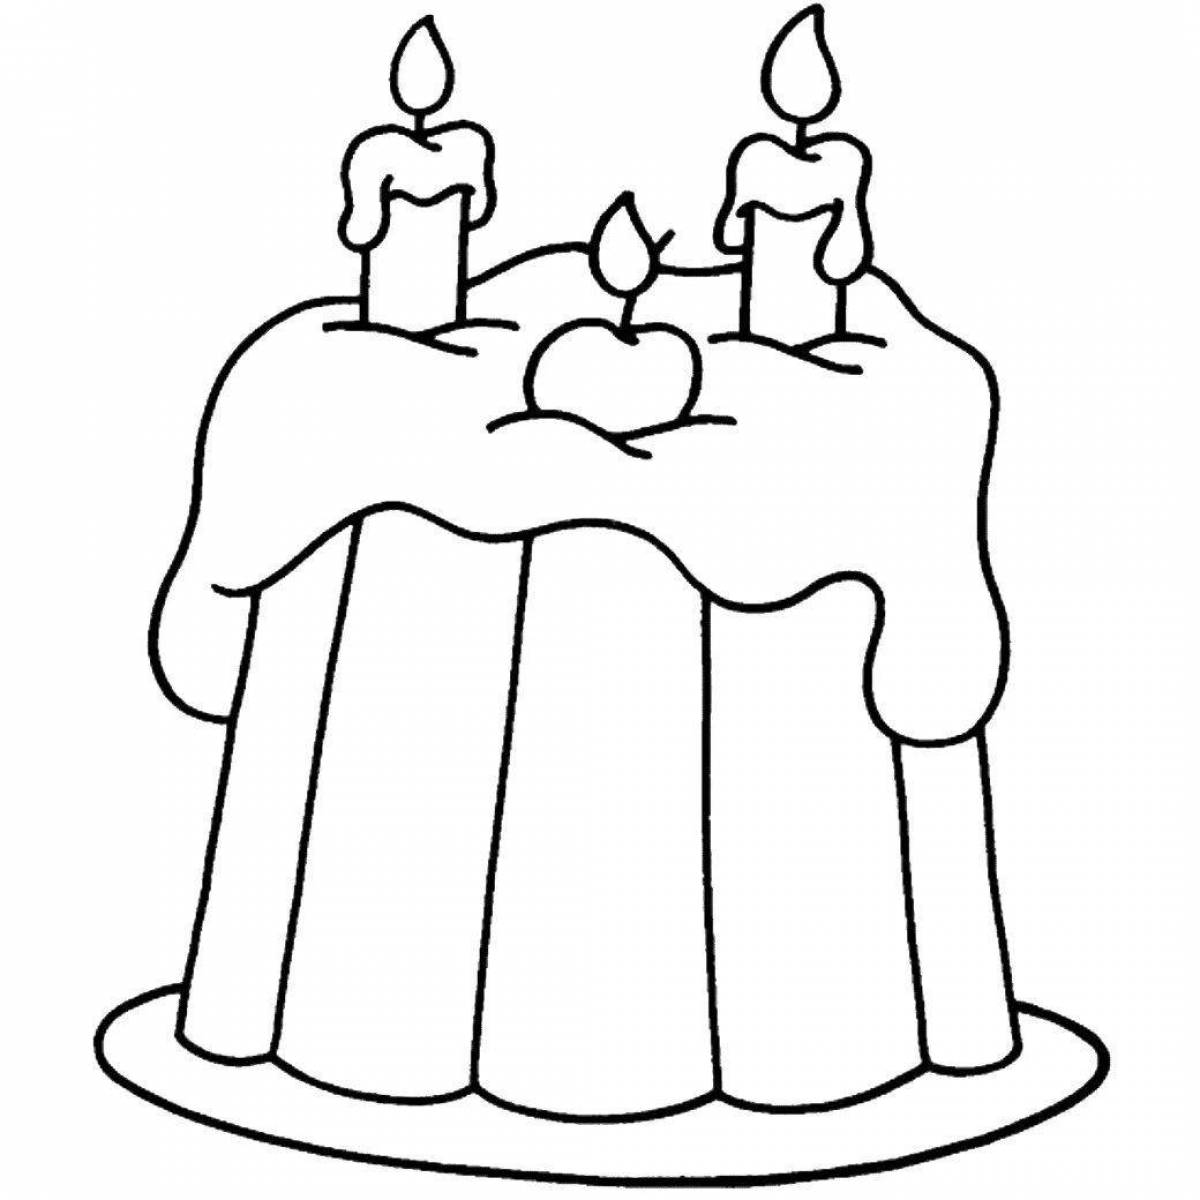 Веселая раскраска торта для детей 3-4 лет